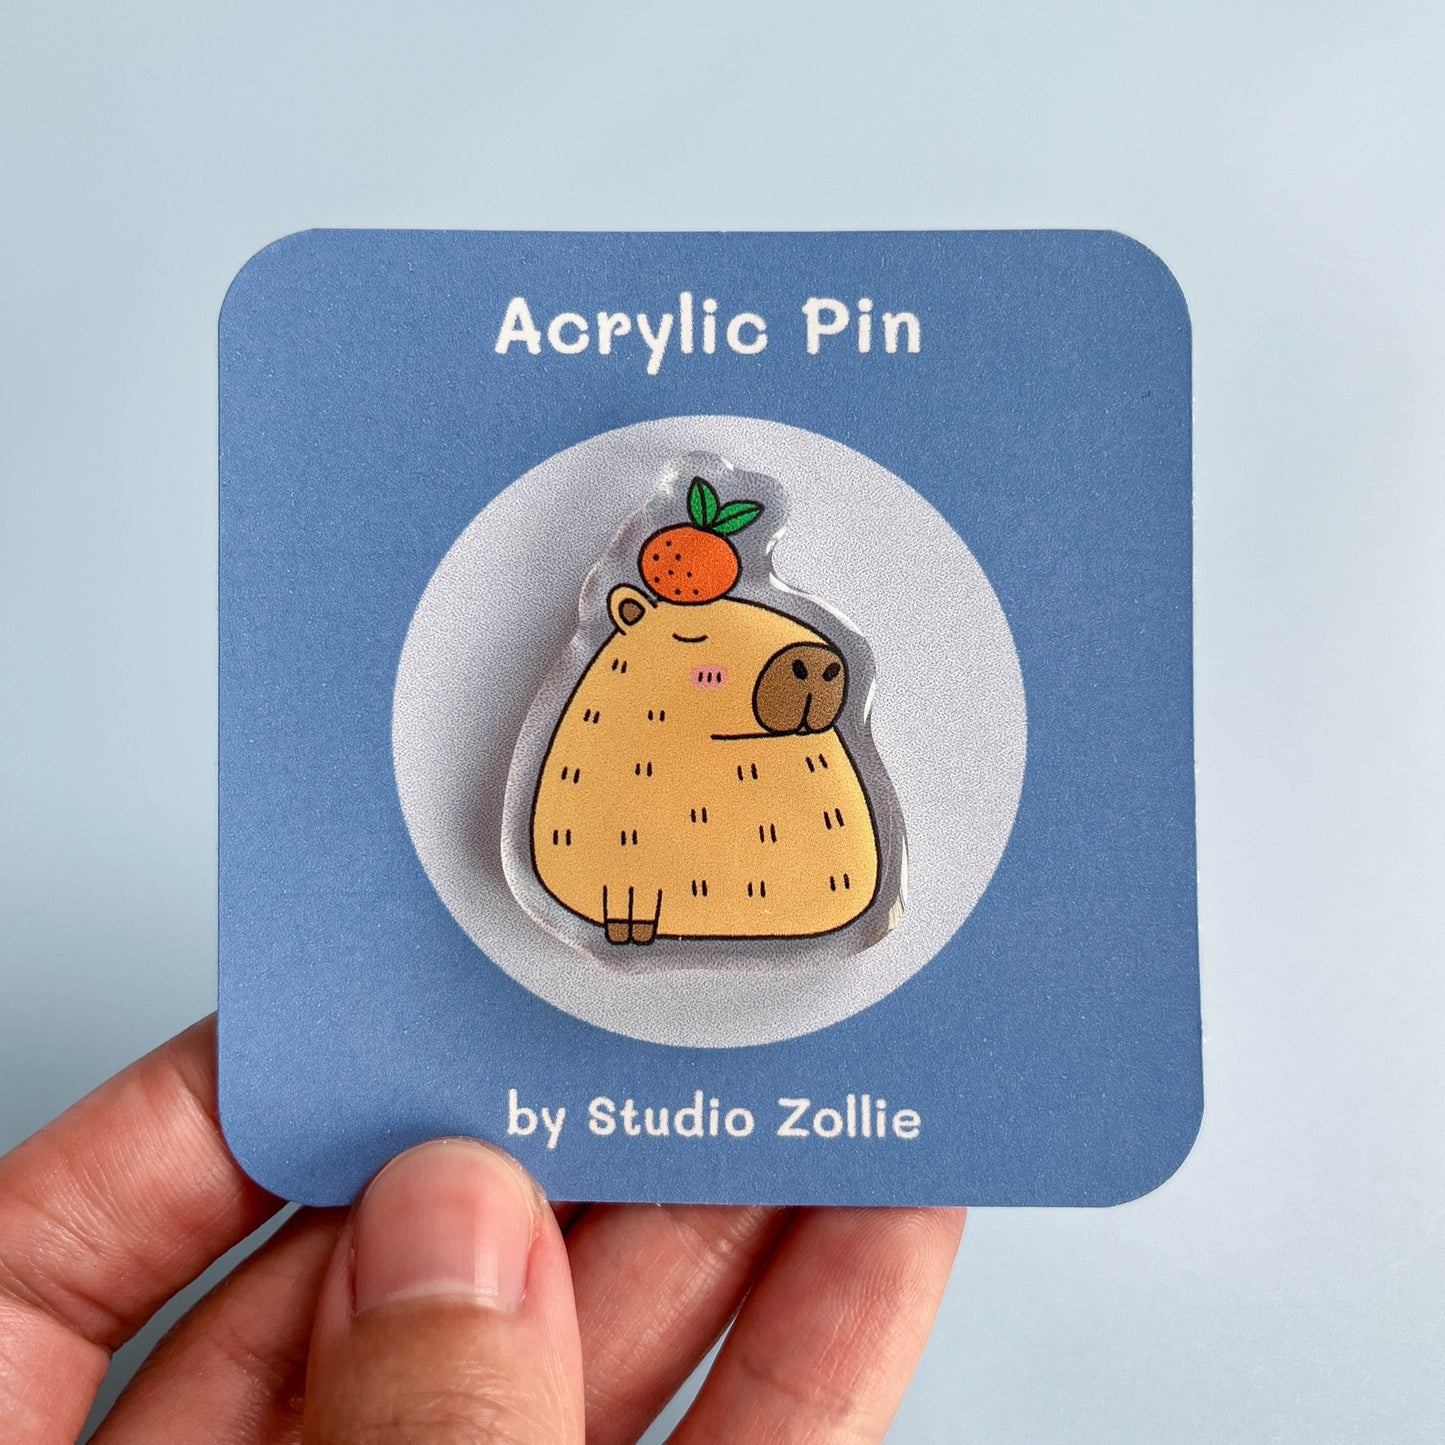 Capybara Acrylic Pin